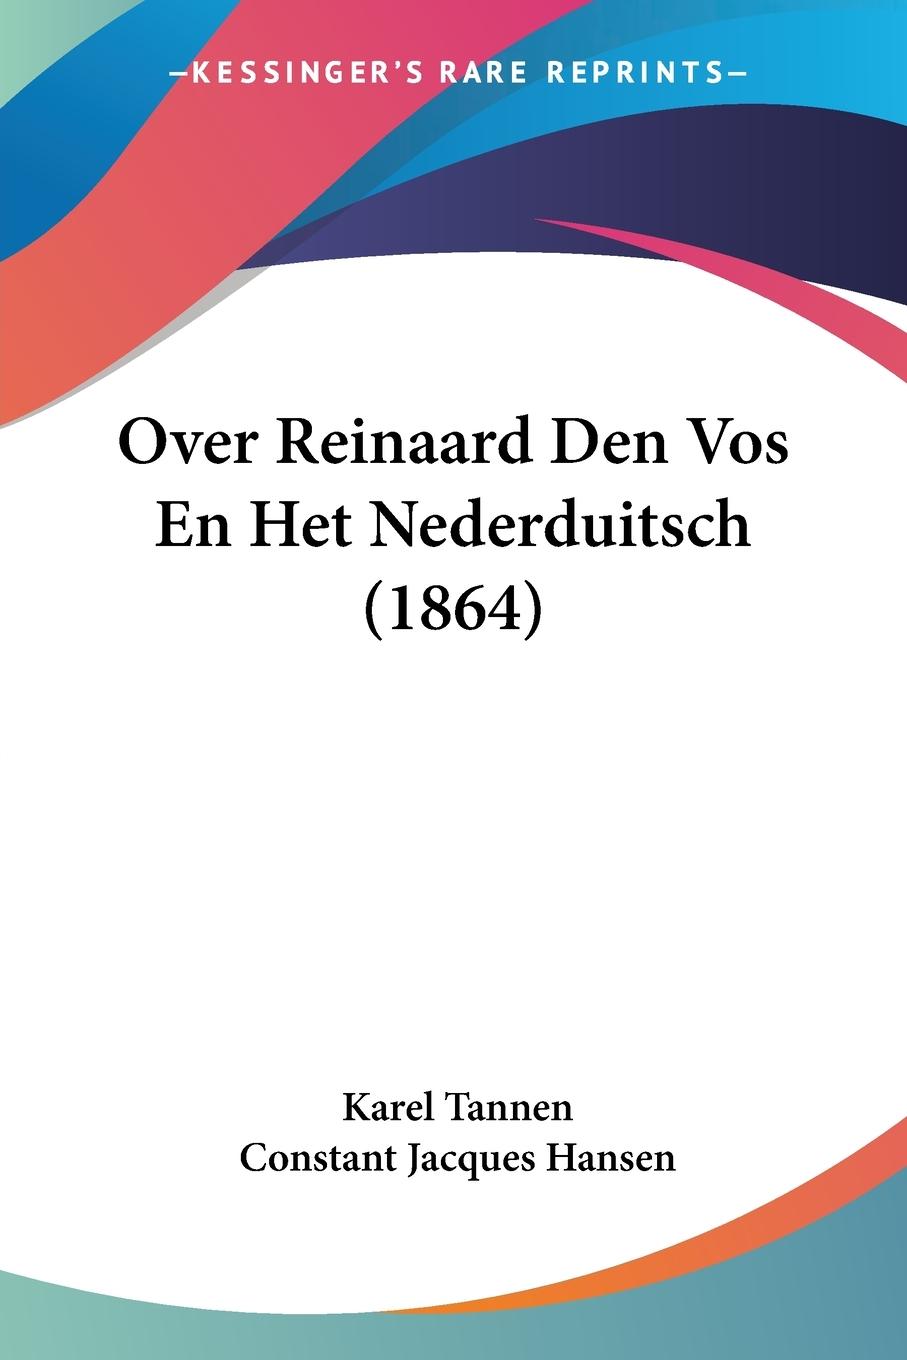 Over Reinaard Den Vos En Het Nederduitsch (1864) - Tannen, Karel Hansen, Constant Jacques